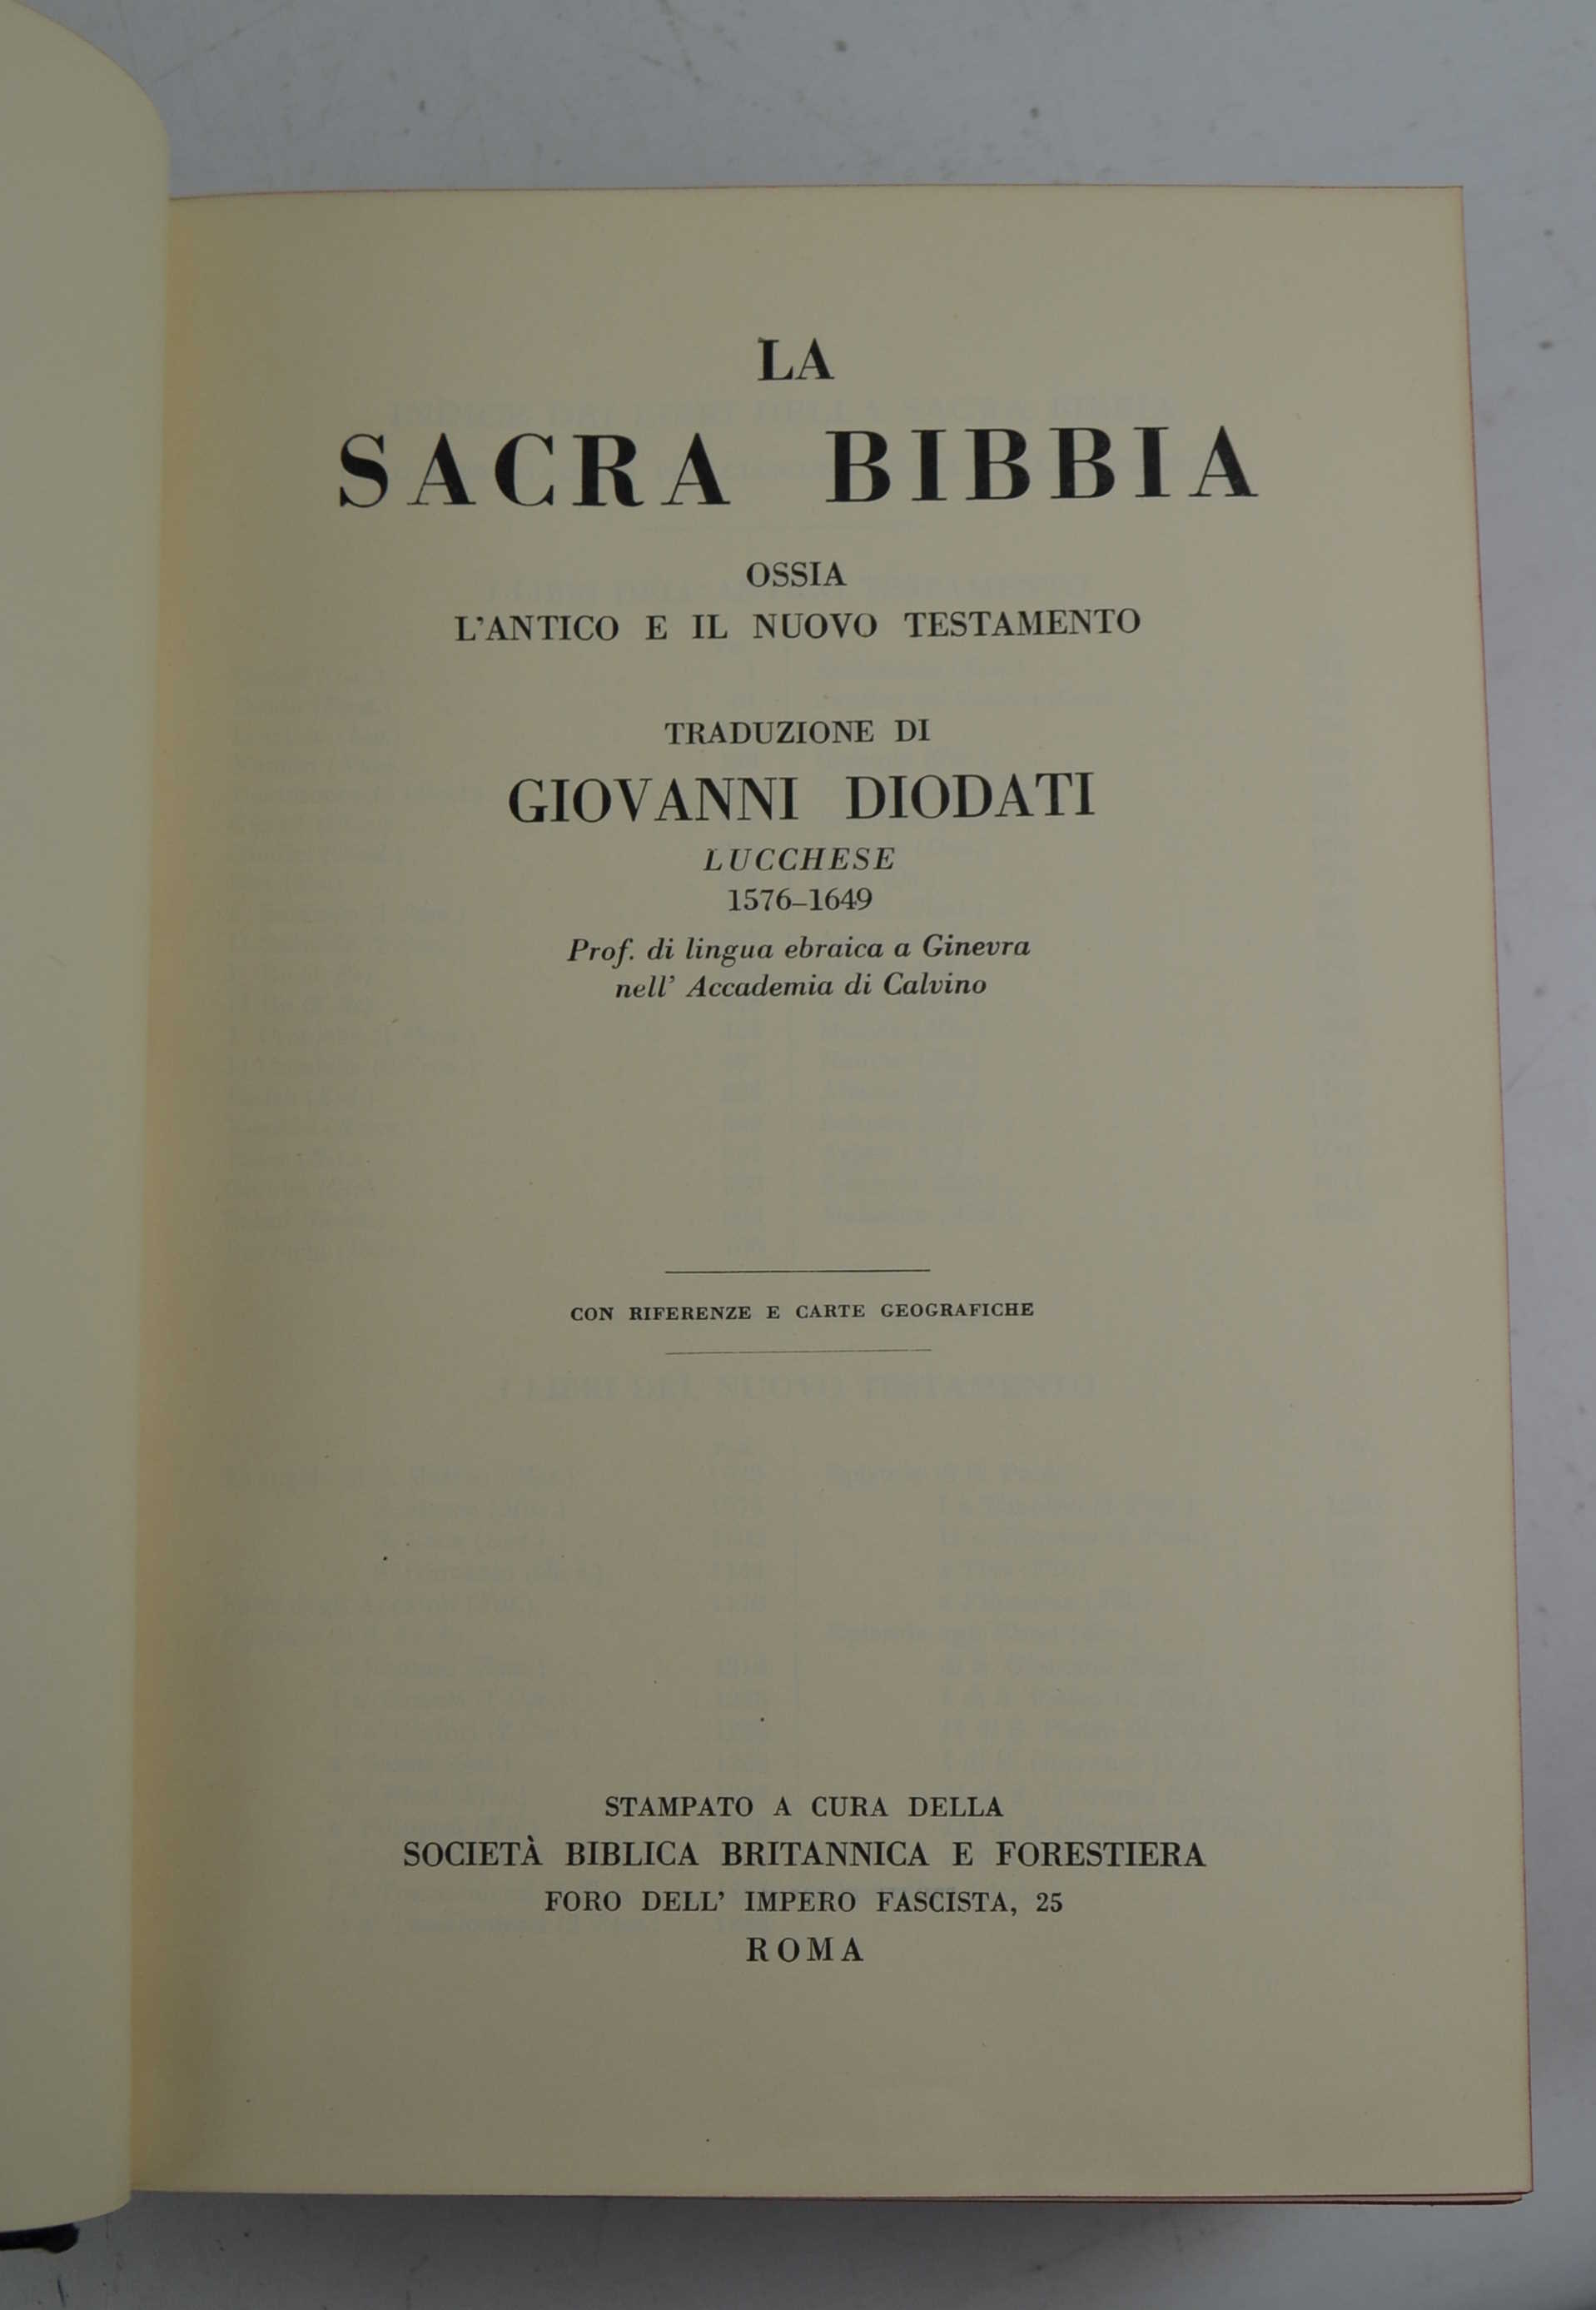 La Sacra Bibbia tradotta In lingua Italiana da Giovanni Diodati